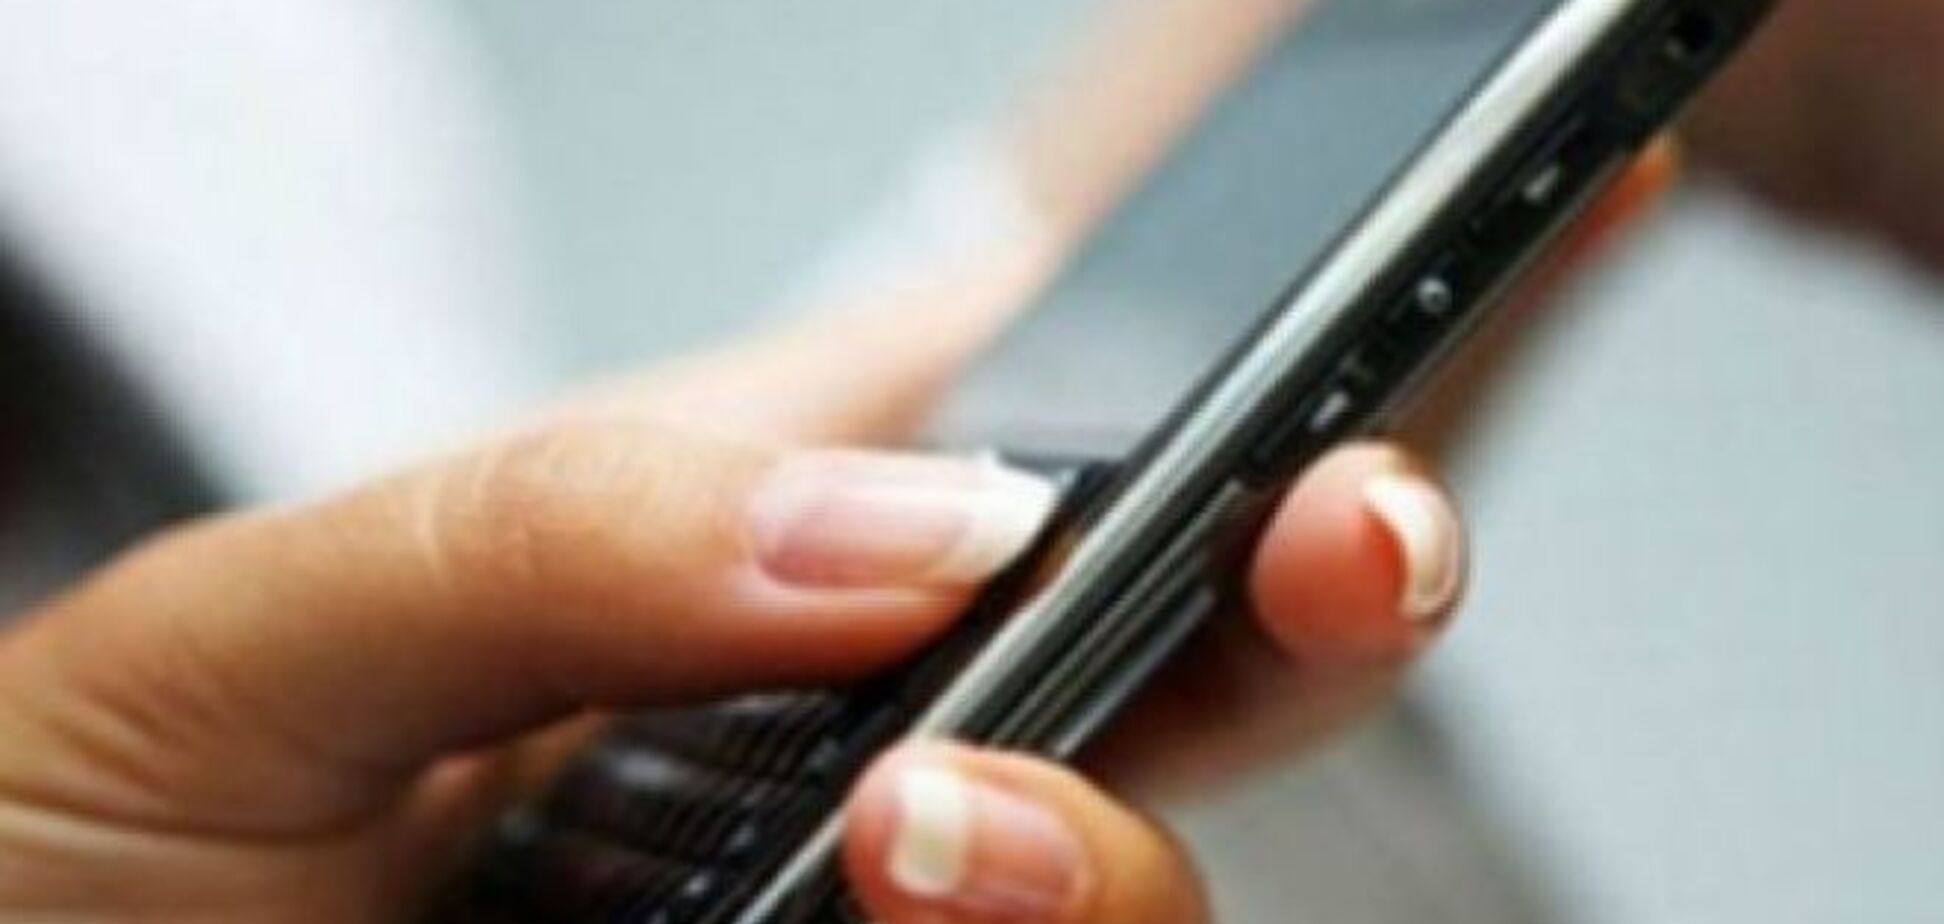 Украинцы пожаловались на ухудшение мобильной связи в стране: звонки обрываются, сеть исчезает